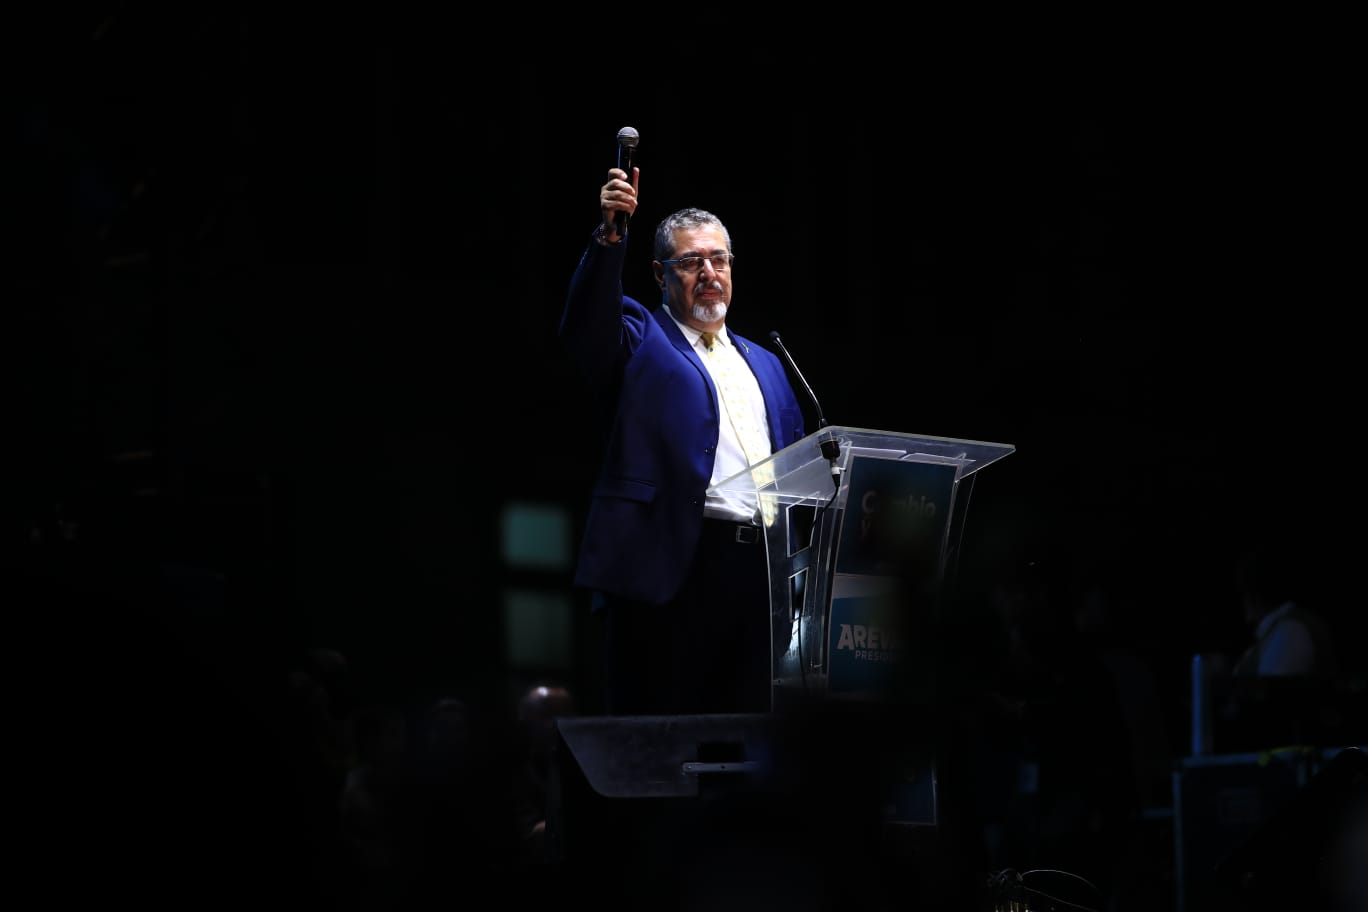 César Bernardo Arévalo de León, de 64 años, fue electo presidente de Guatemala el pasado 20 de agosto. (Foto Prensa Libre: Carlos Hernández Ovalle).